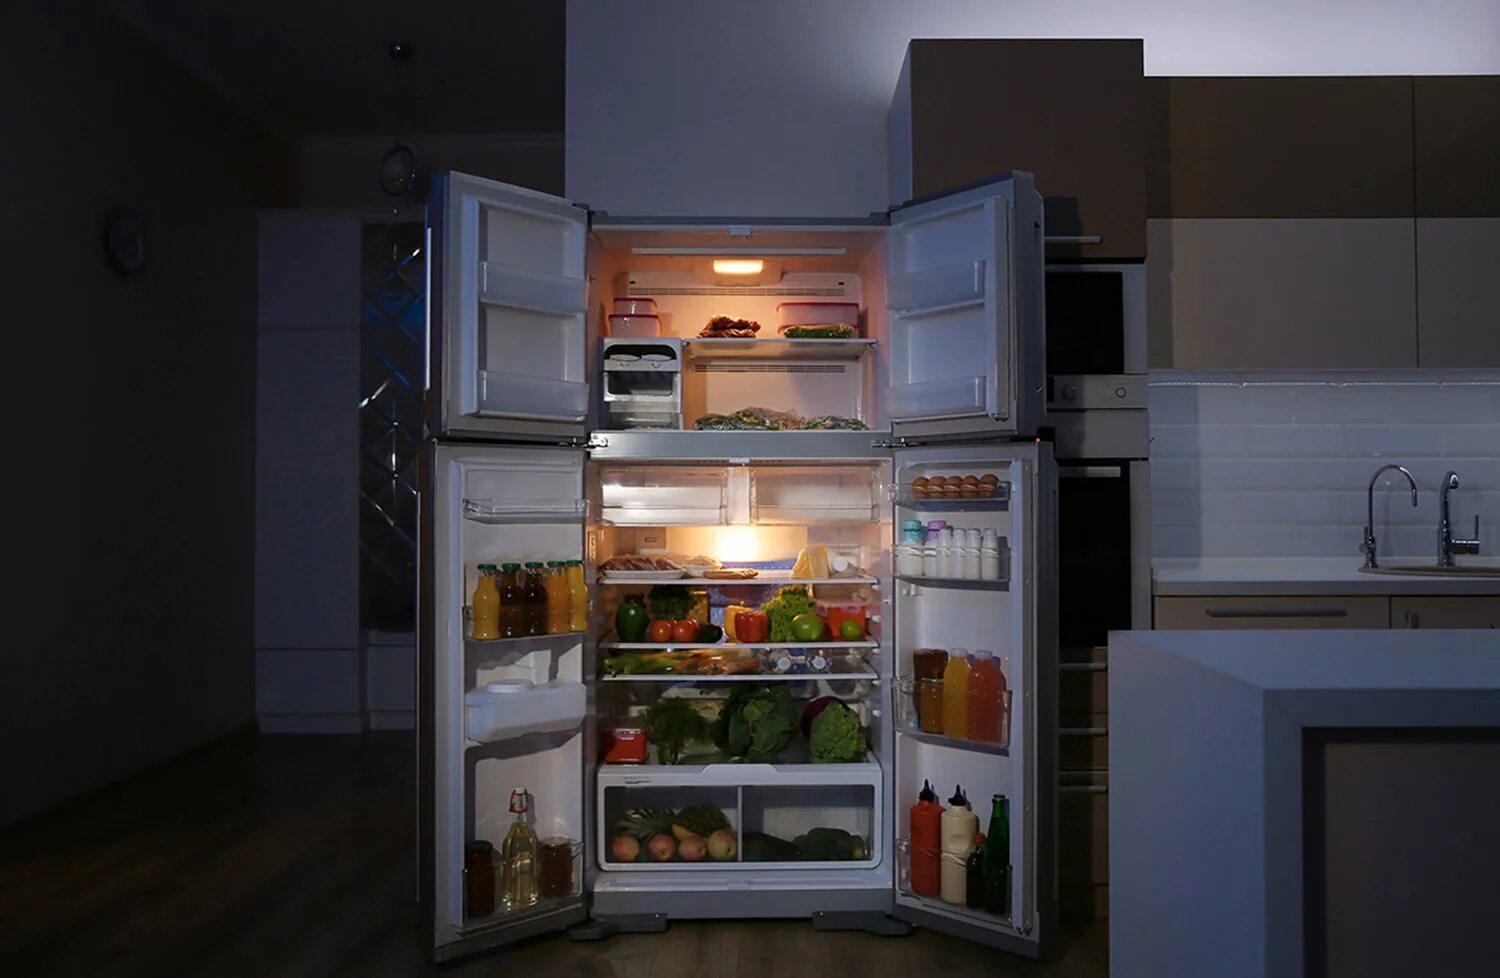 Холодильник работал открытой. Холодильник с продуктами. Открытый холодильник. Открытый холодильник ночью. Ночь кухня открытый холодильник.